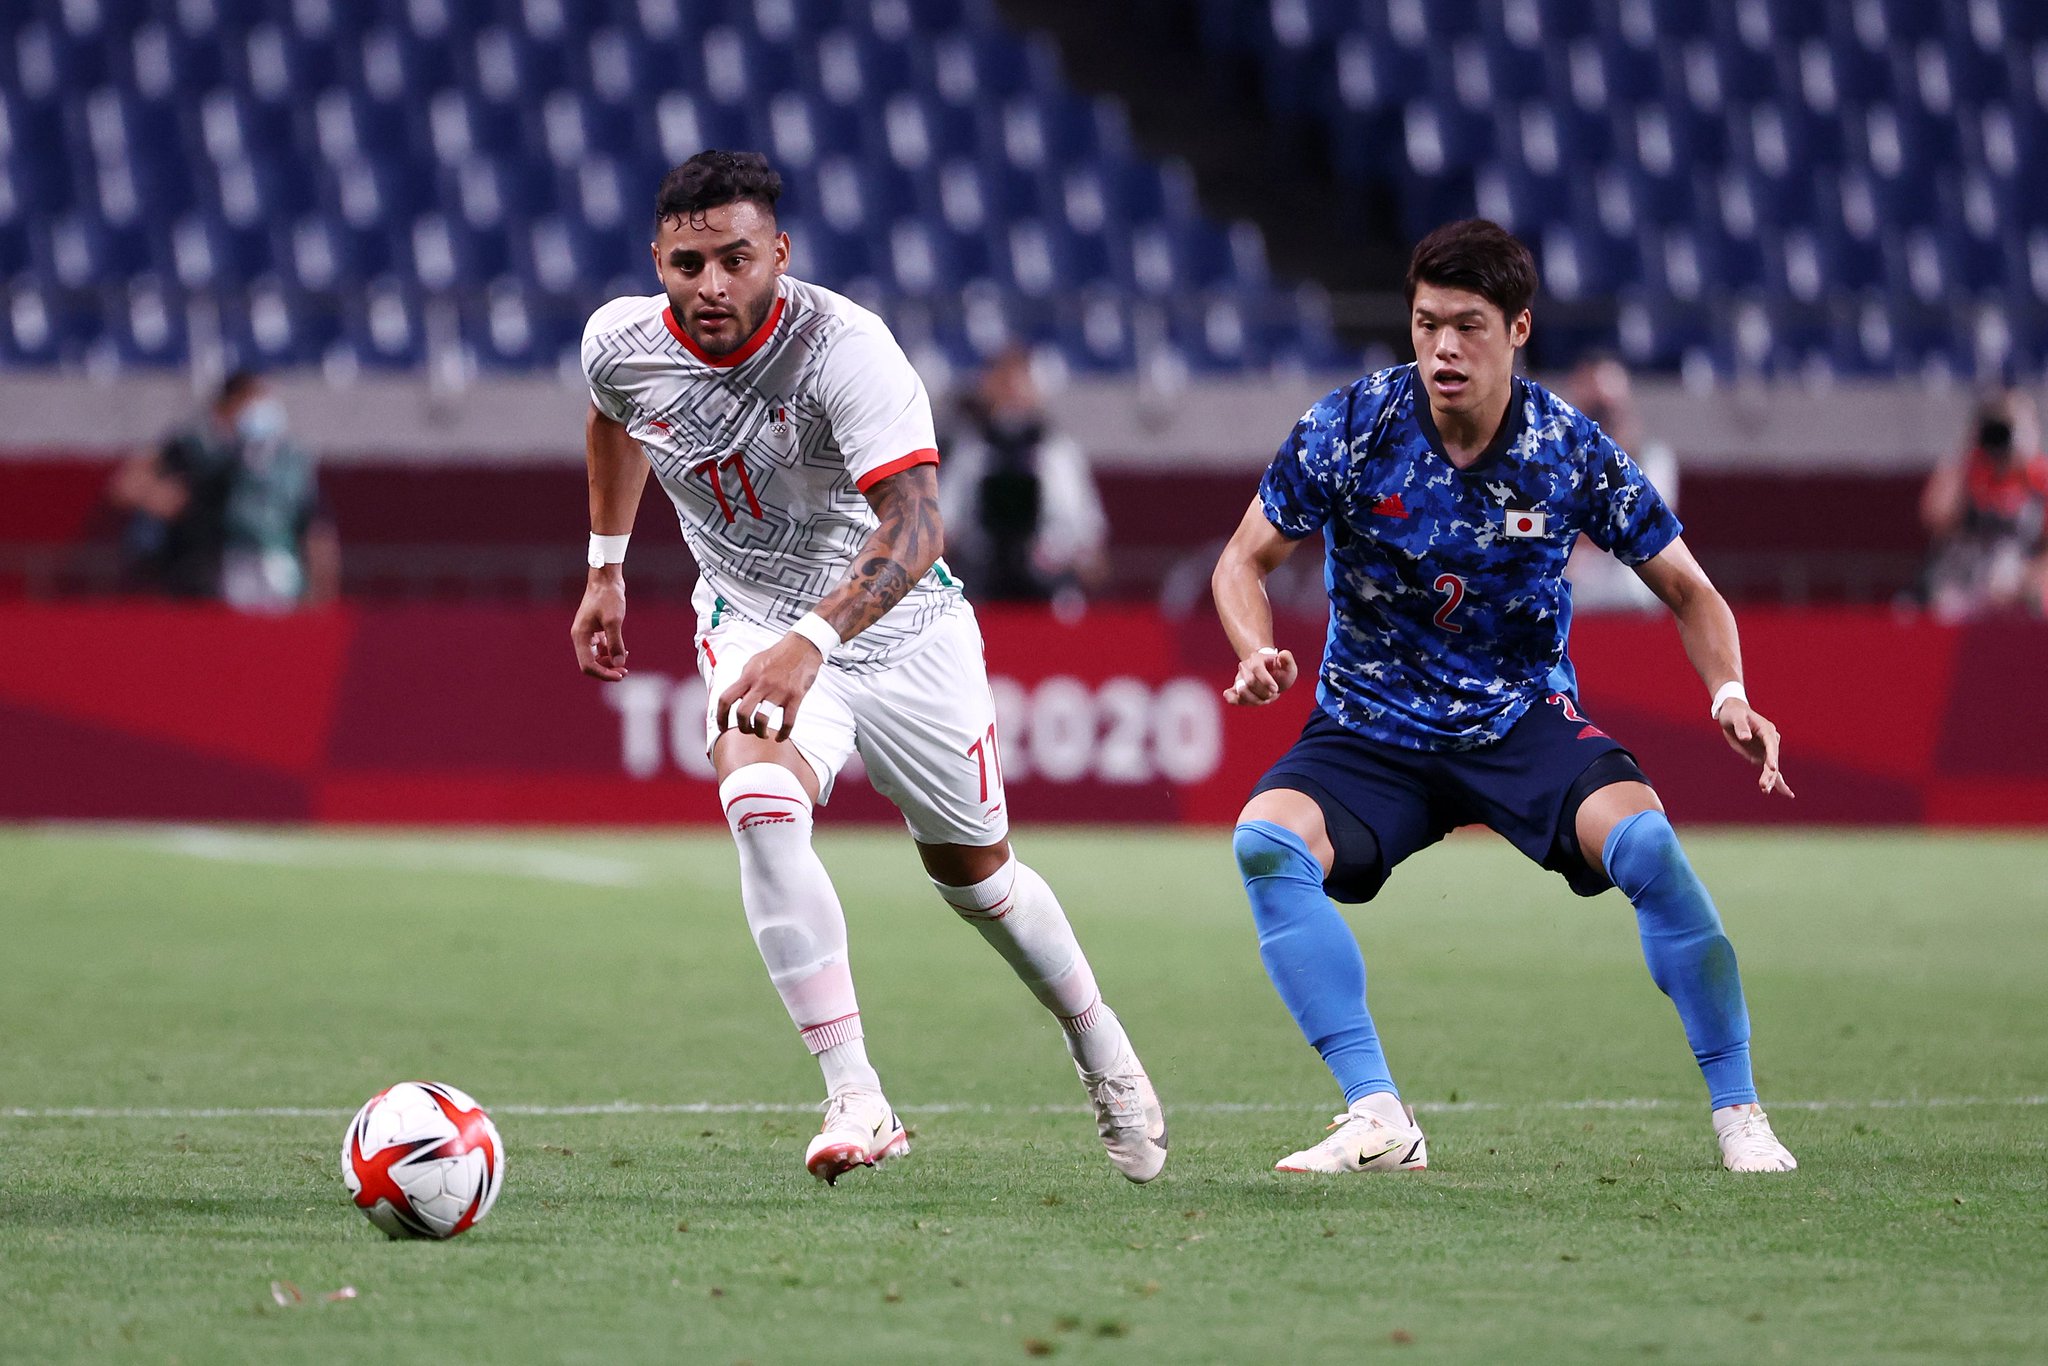 Del gozo al pozo: México cayó 2-1 ante Japón en el futbol olímpico